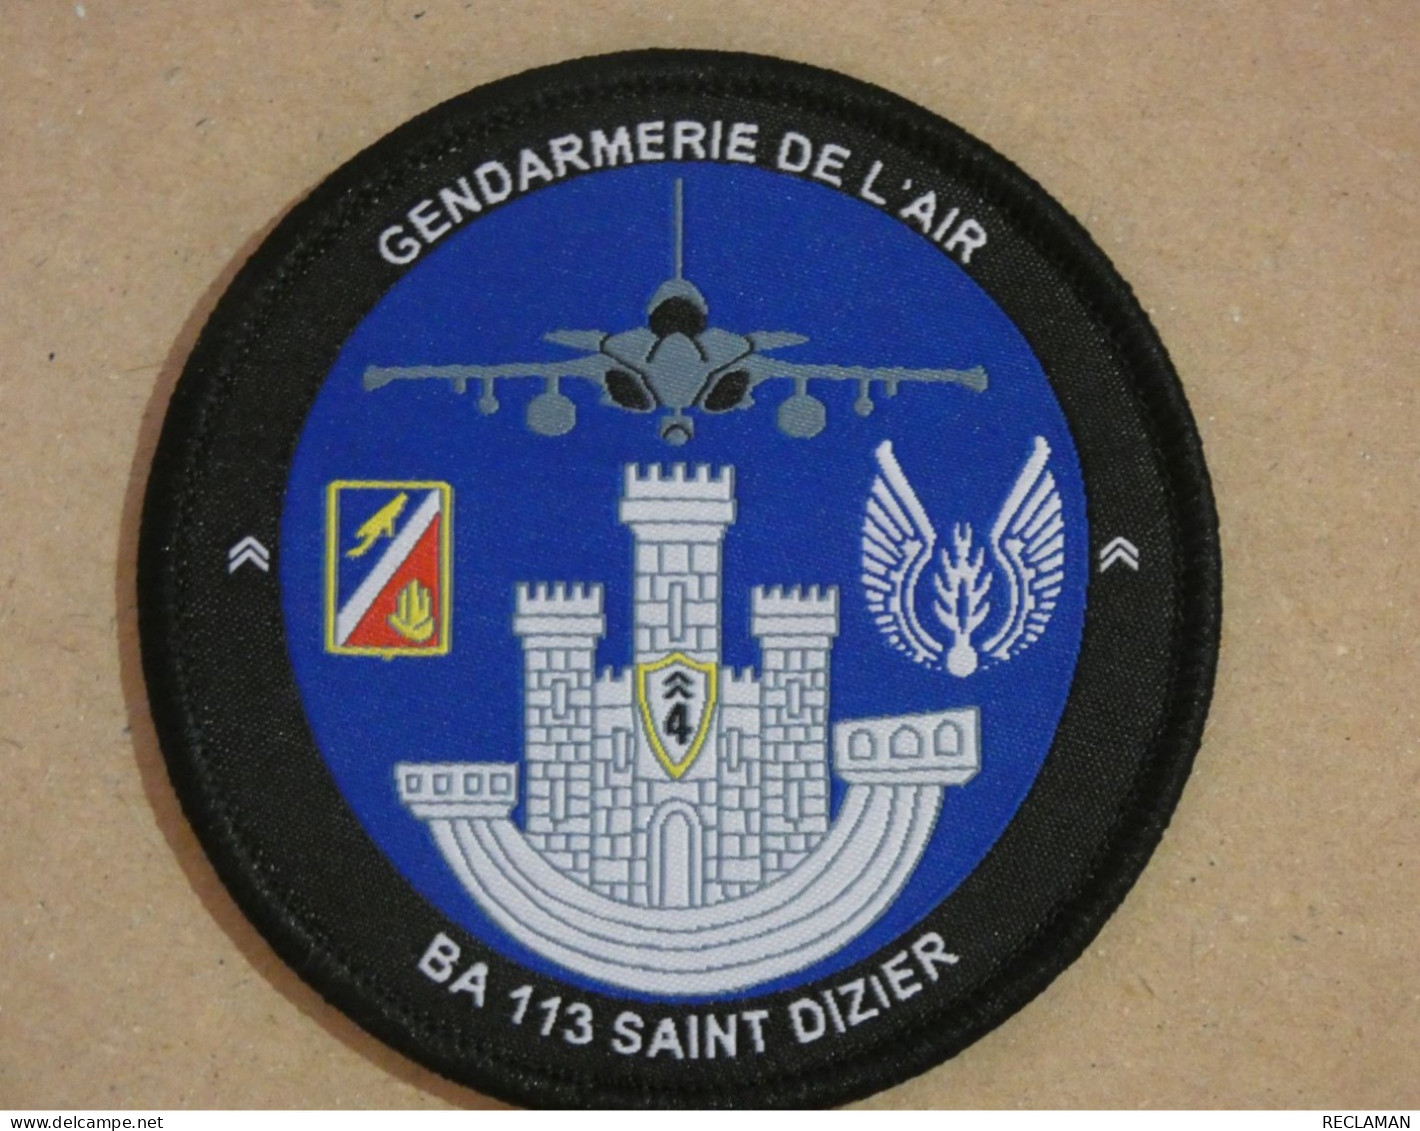 PATCH ECUSSON RONDACHE Collection Tissus GENDARMERIE DE L'AIR BA113 ST DIZIER - Police & Gendarmerie